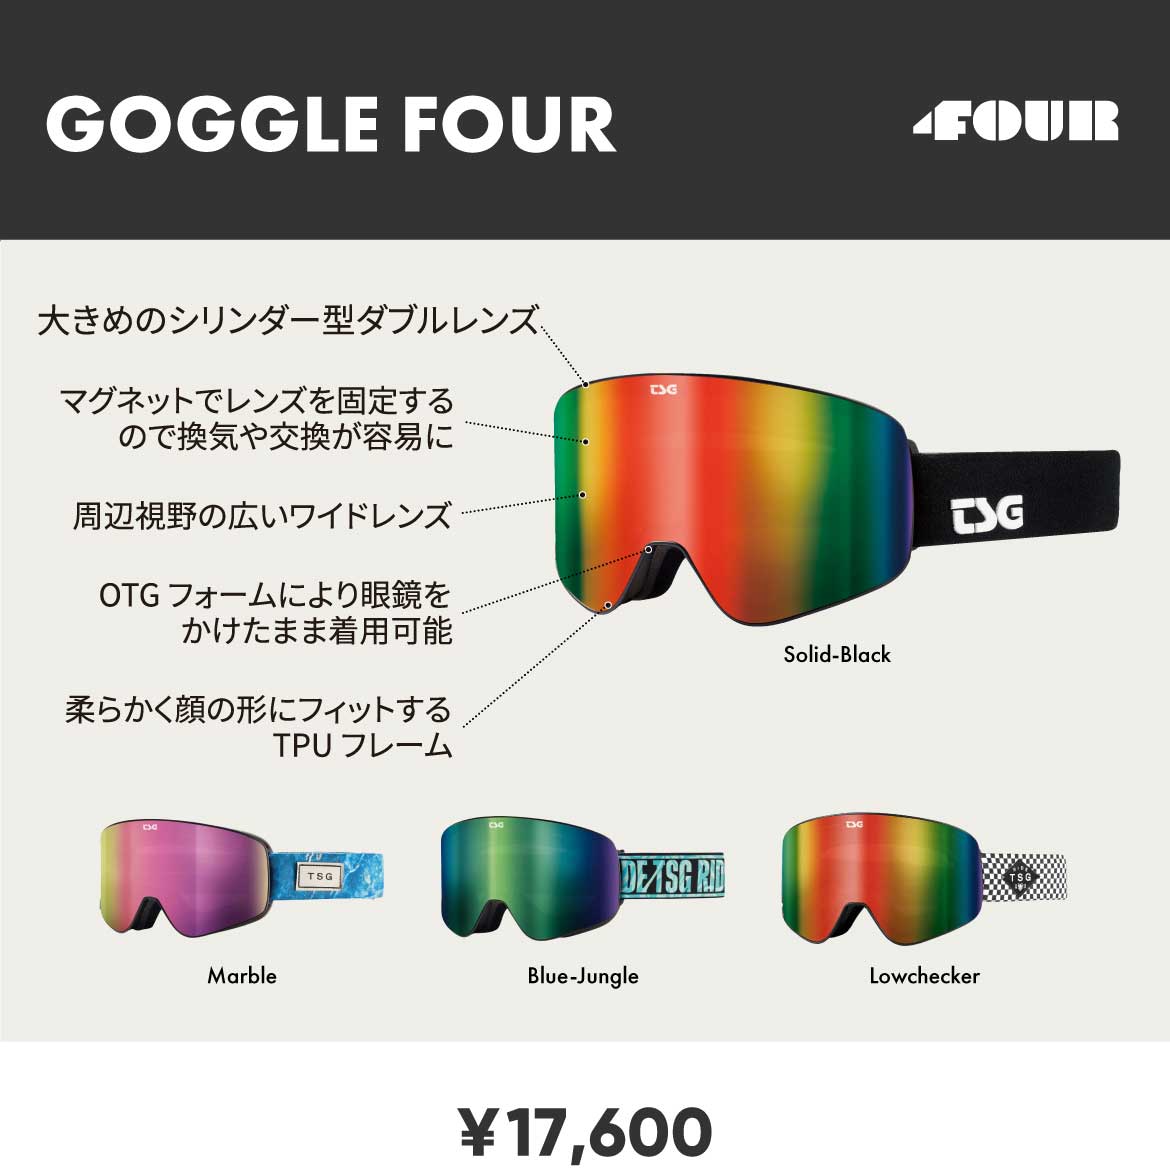 Goggle Four